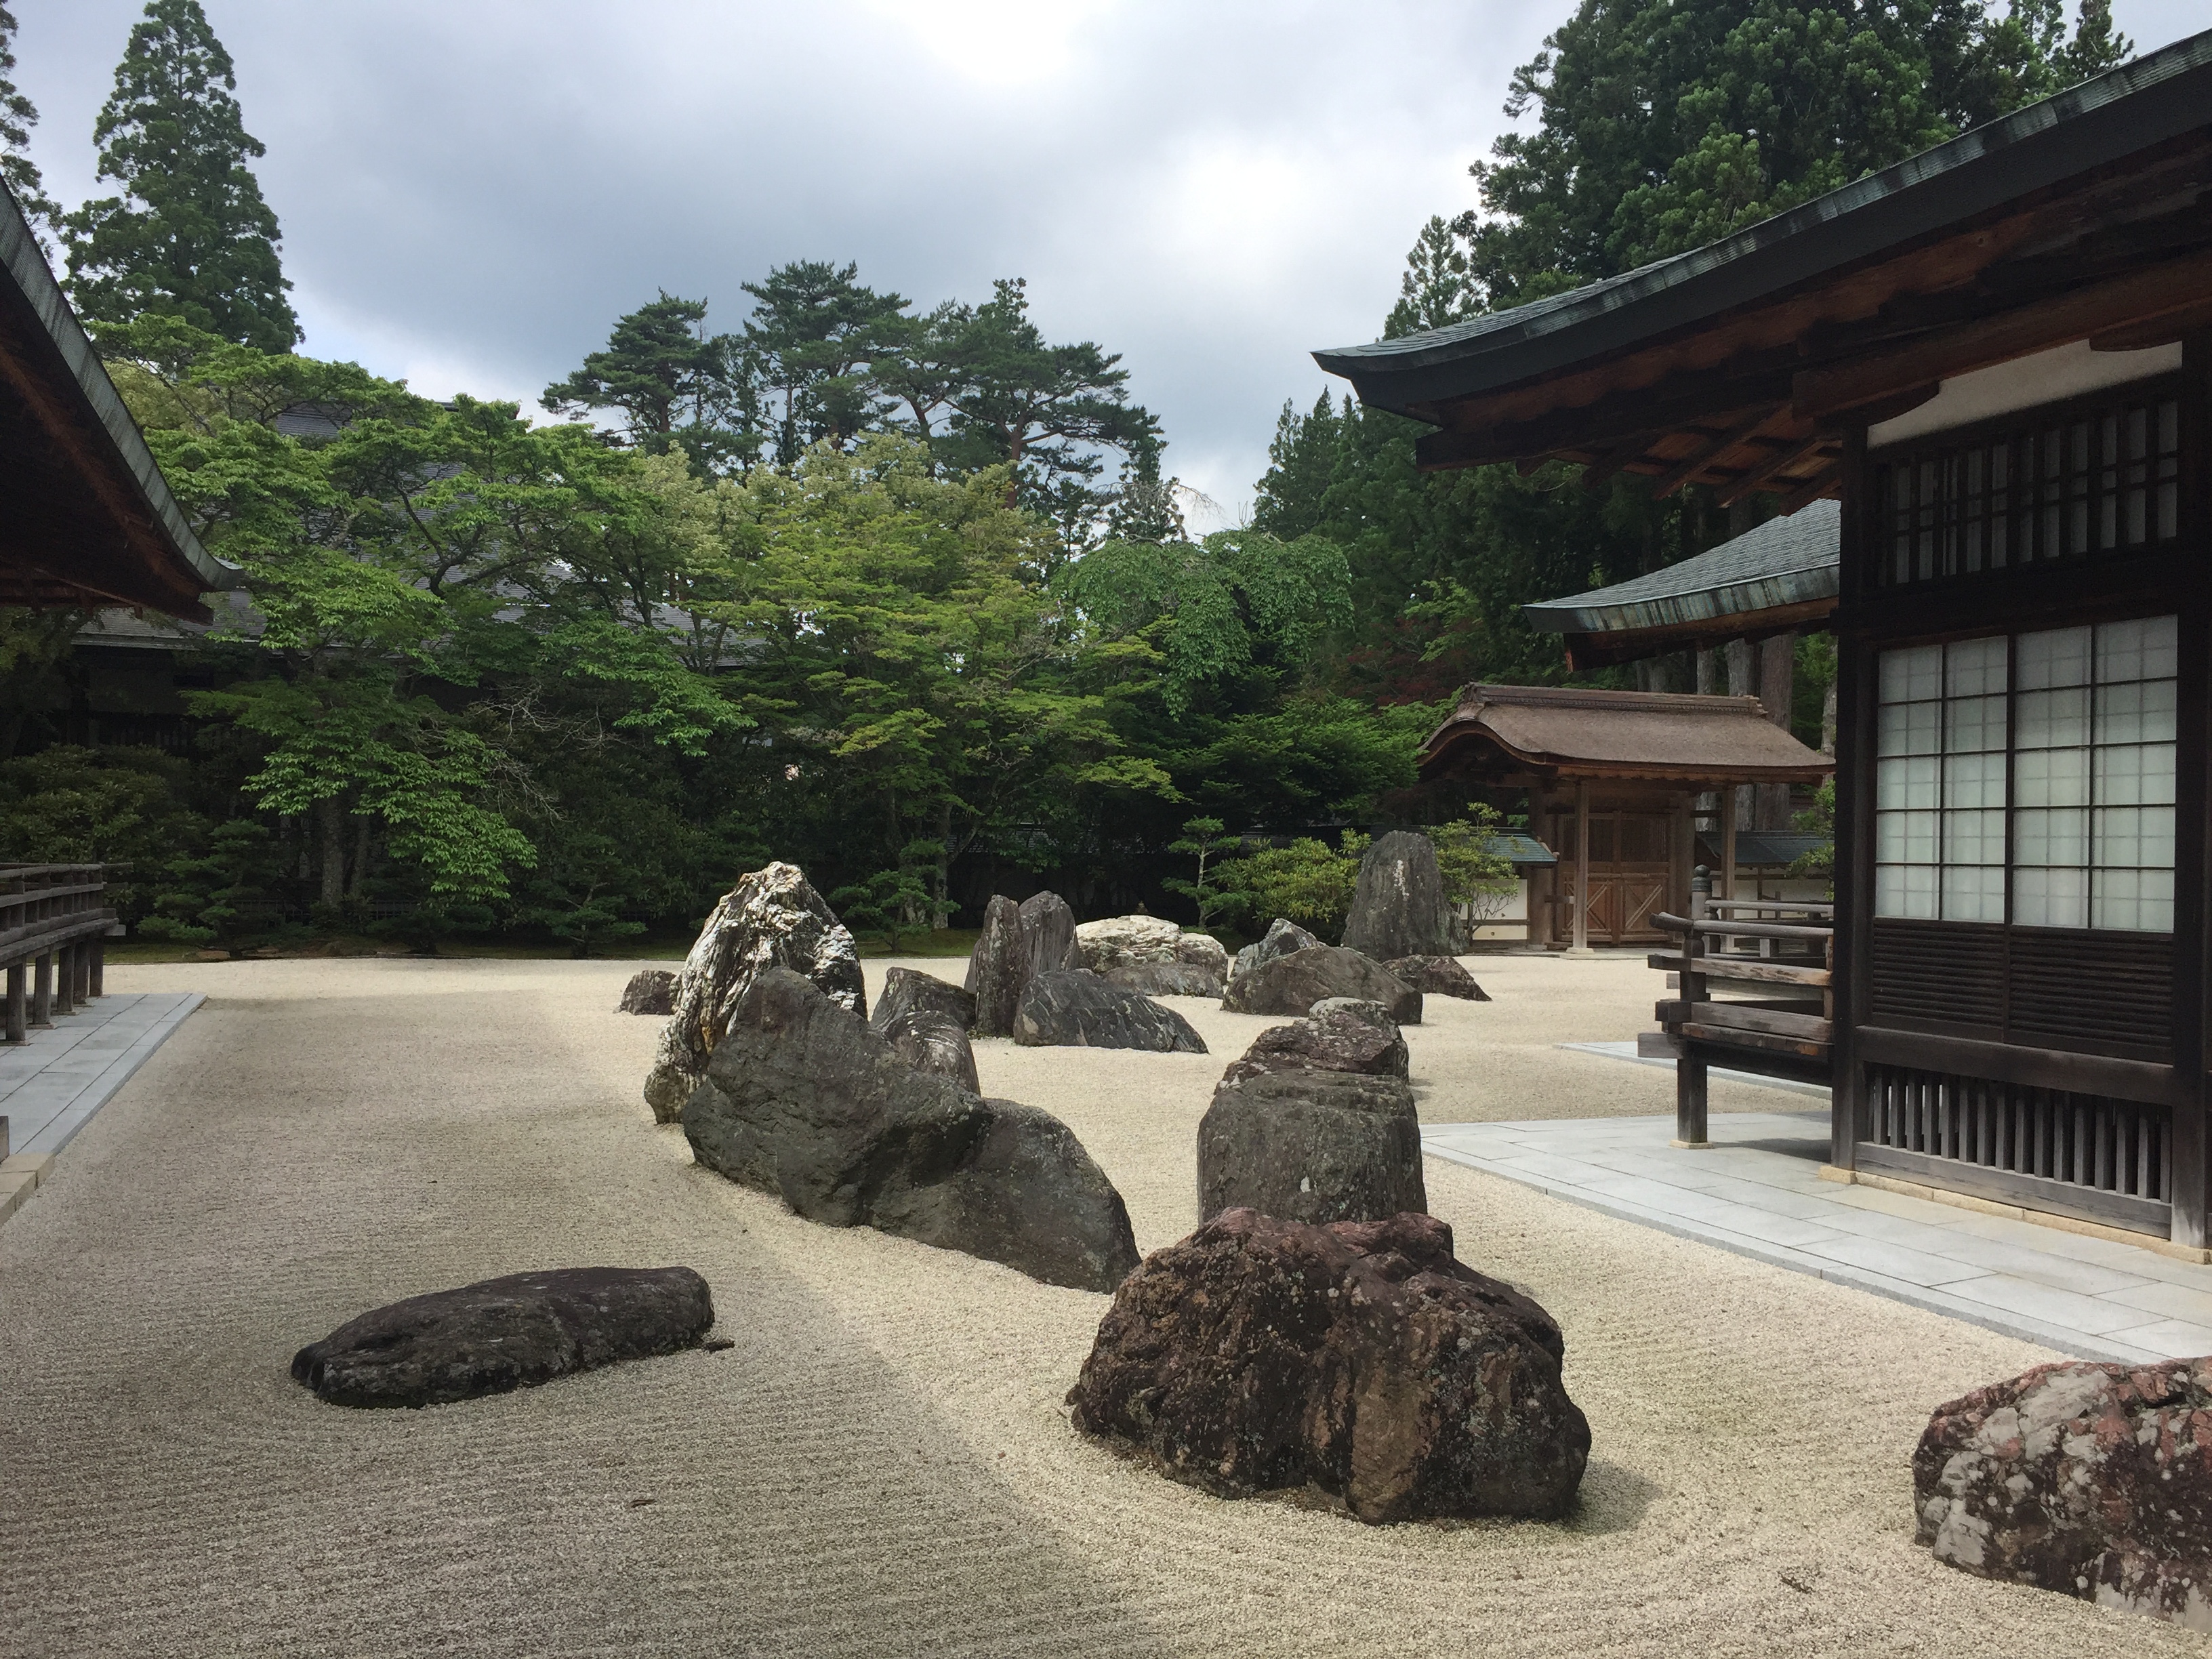 高野山金刚峰寺 日本京都和歌山游(2) 第 1 幅